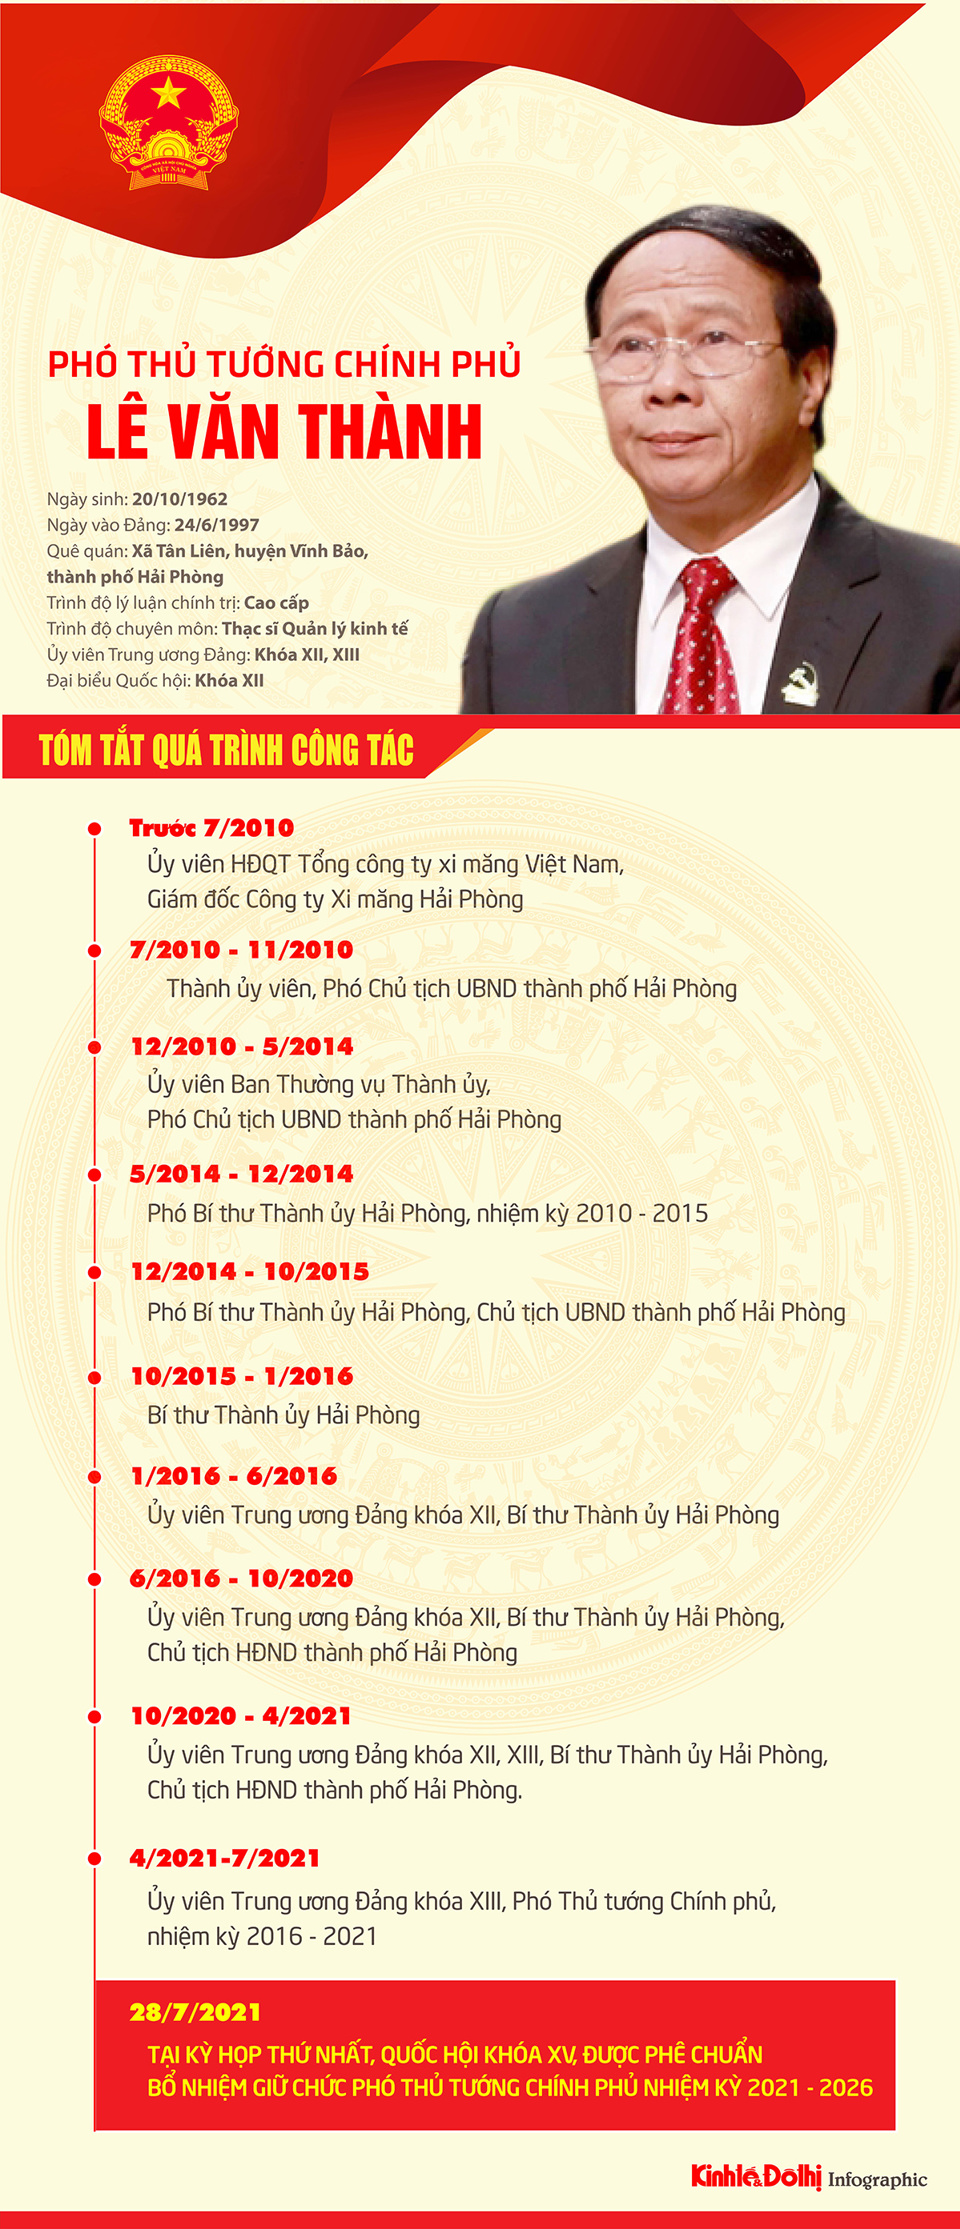 [Infographic] Tóm tắt quá trình công tác của Phó Thủ tướng Chính phủ Lê Văn Thành - Ảnh 1